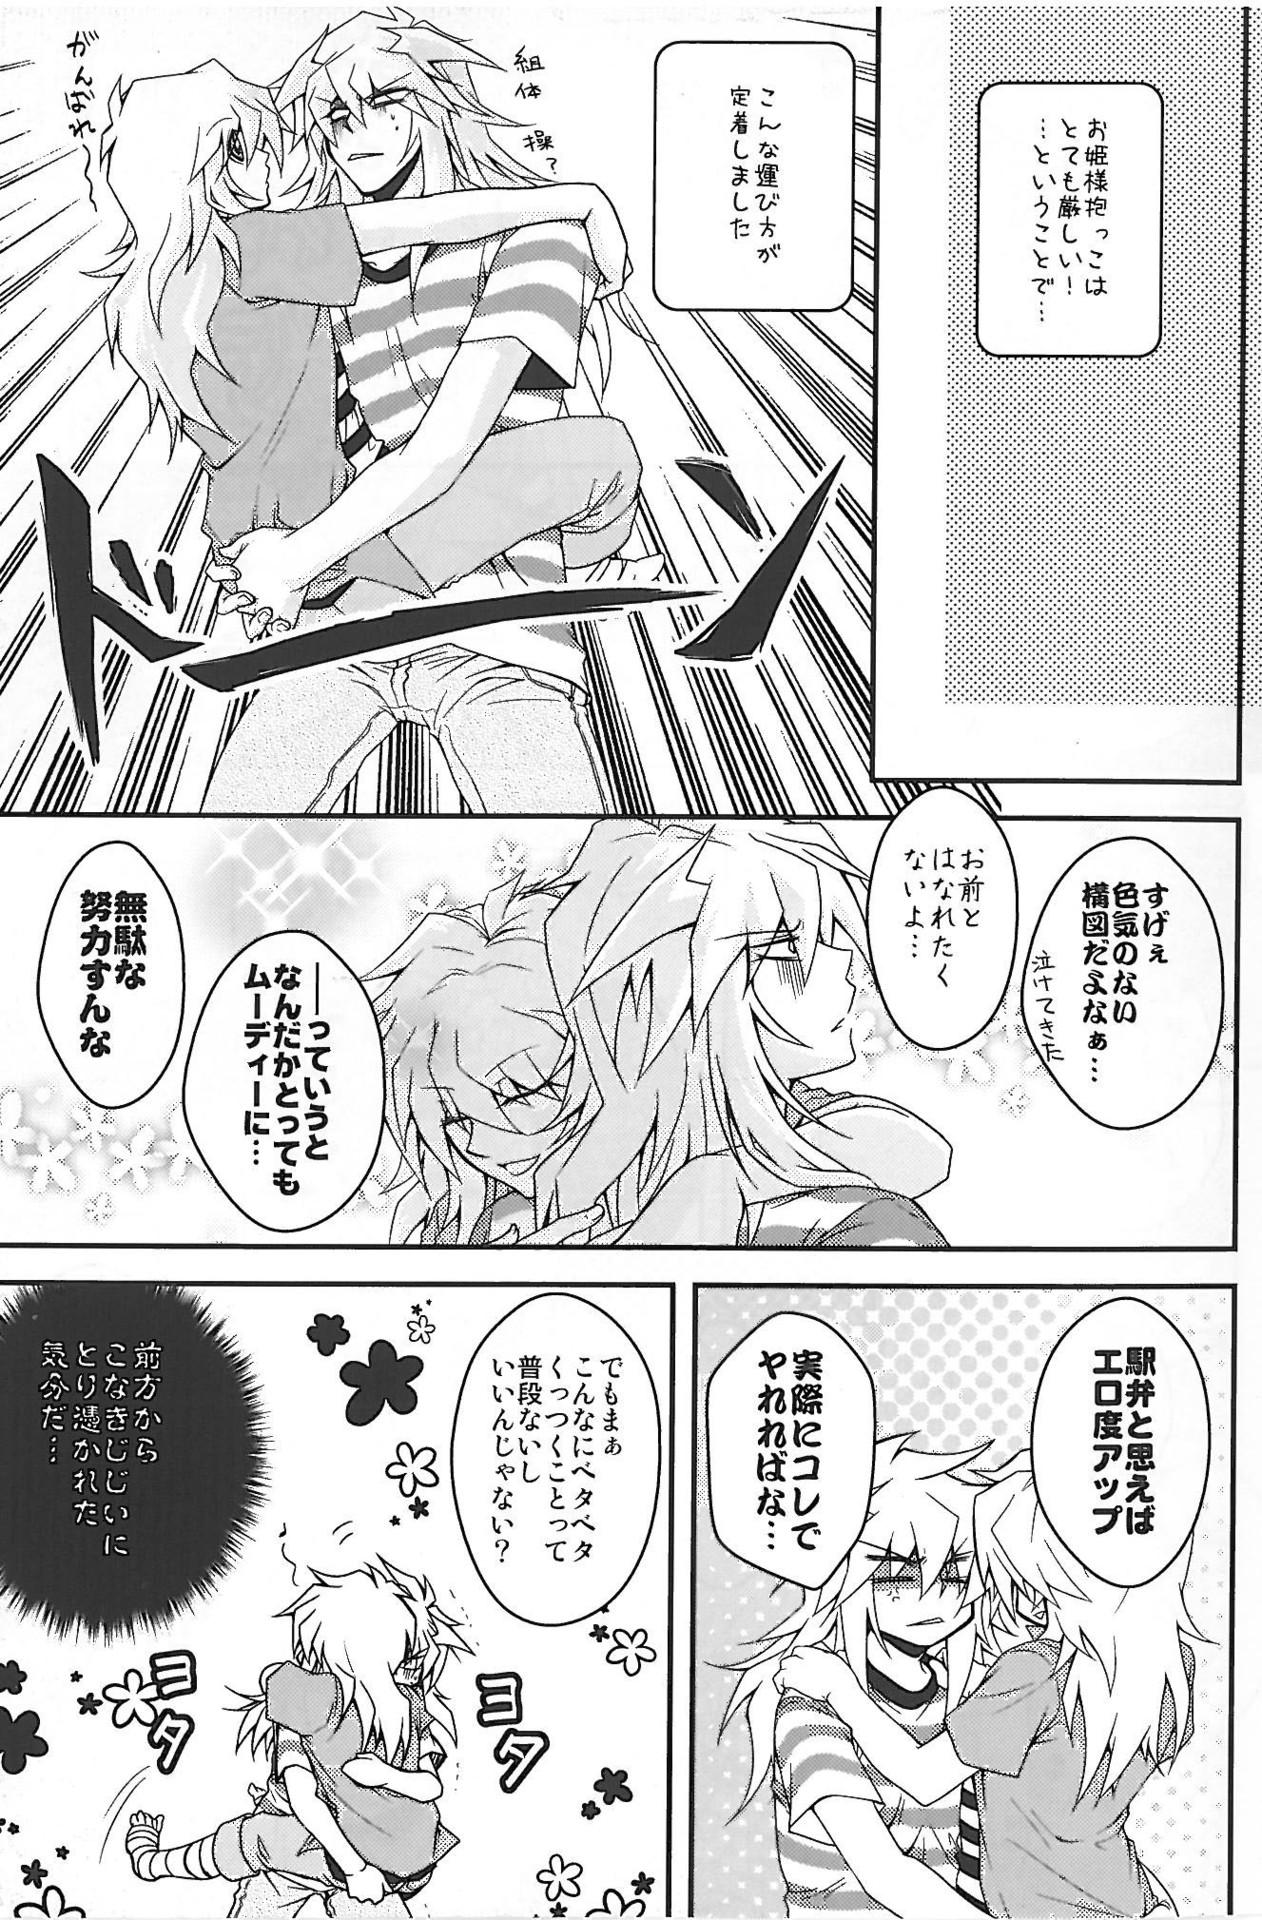 Leather Shinjuuji Tsukasa [High Mode] intensive care lv 3 - Yu-gi-oh Weird - Page 7